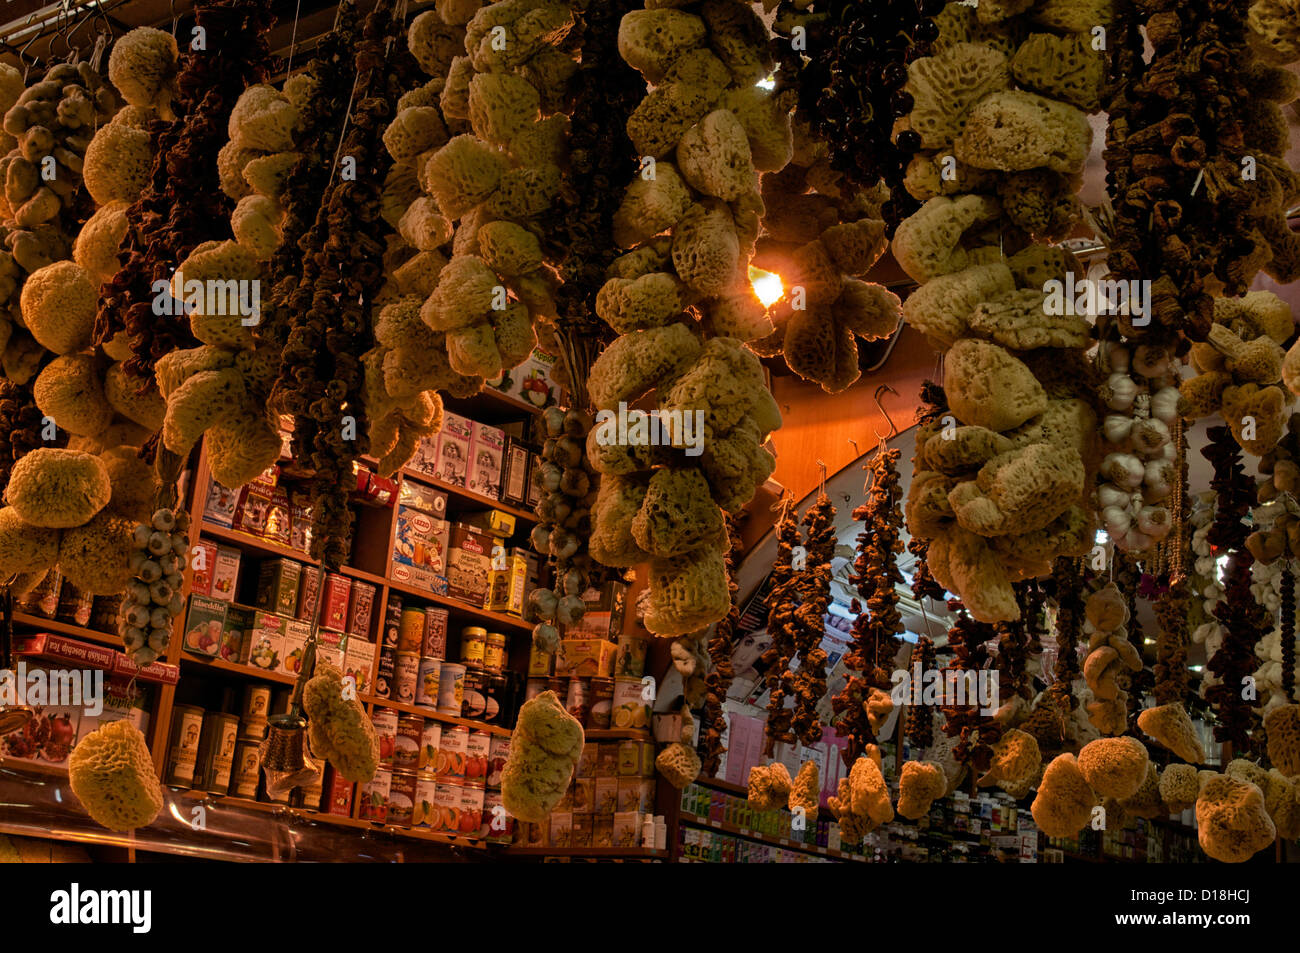 Éponges de mer accroché sur l'affichage pour la vente au Grand Bazar à Istanbul, Turquie Banque D'Images